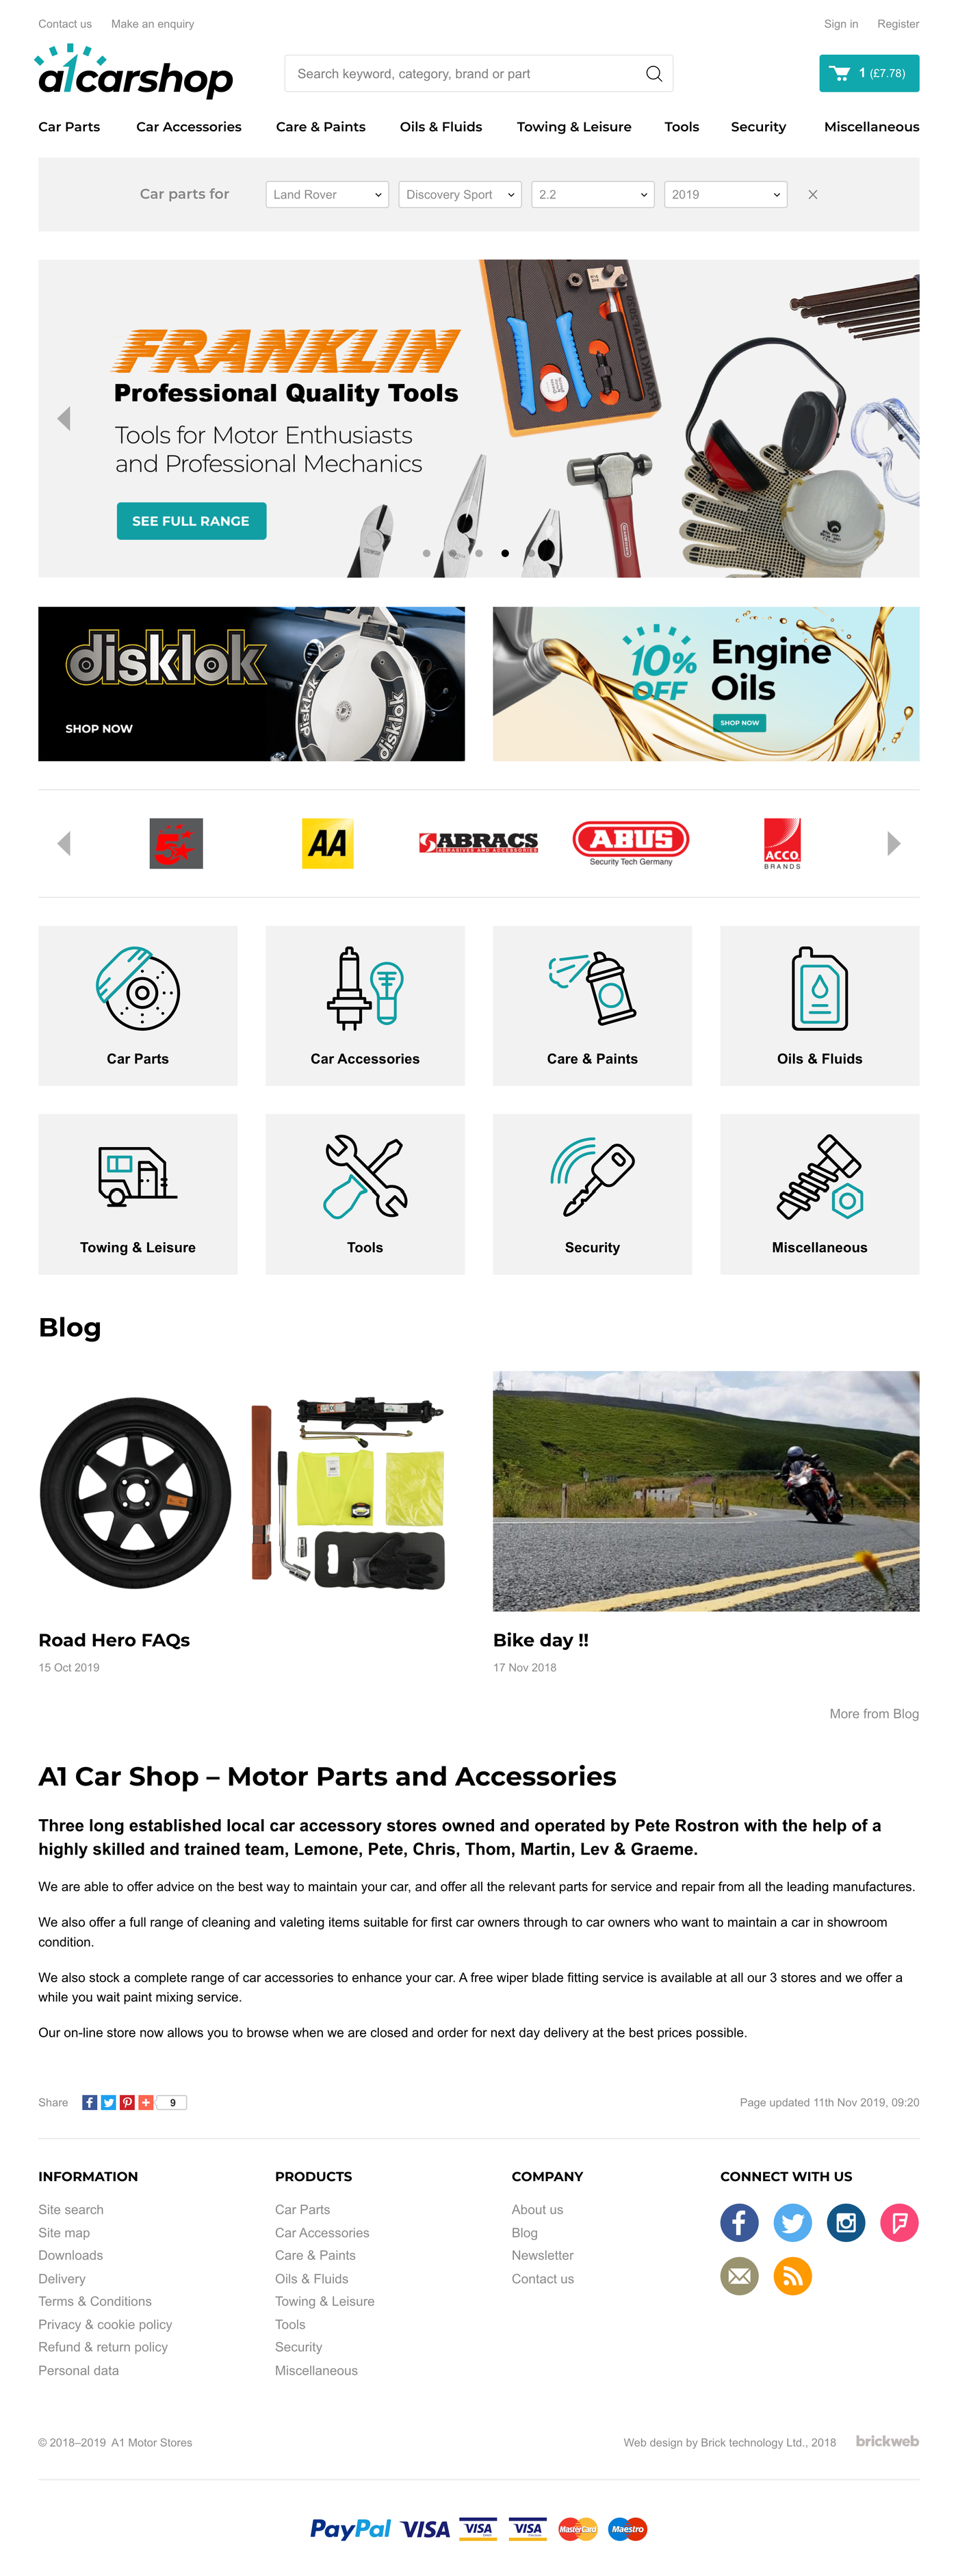 A1 Car Shop Home page